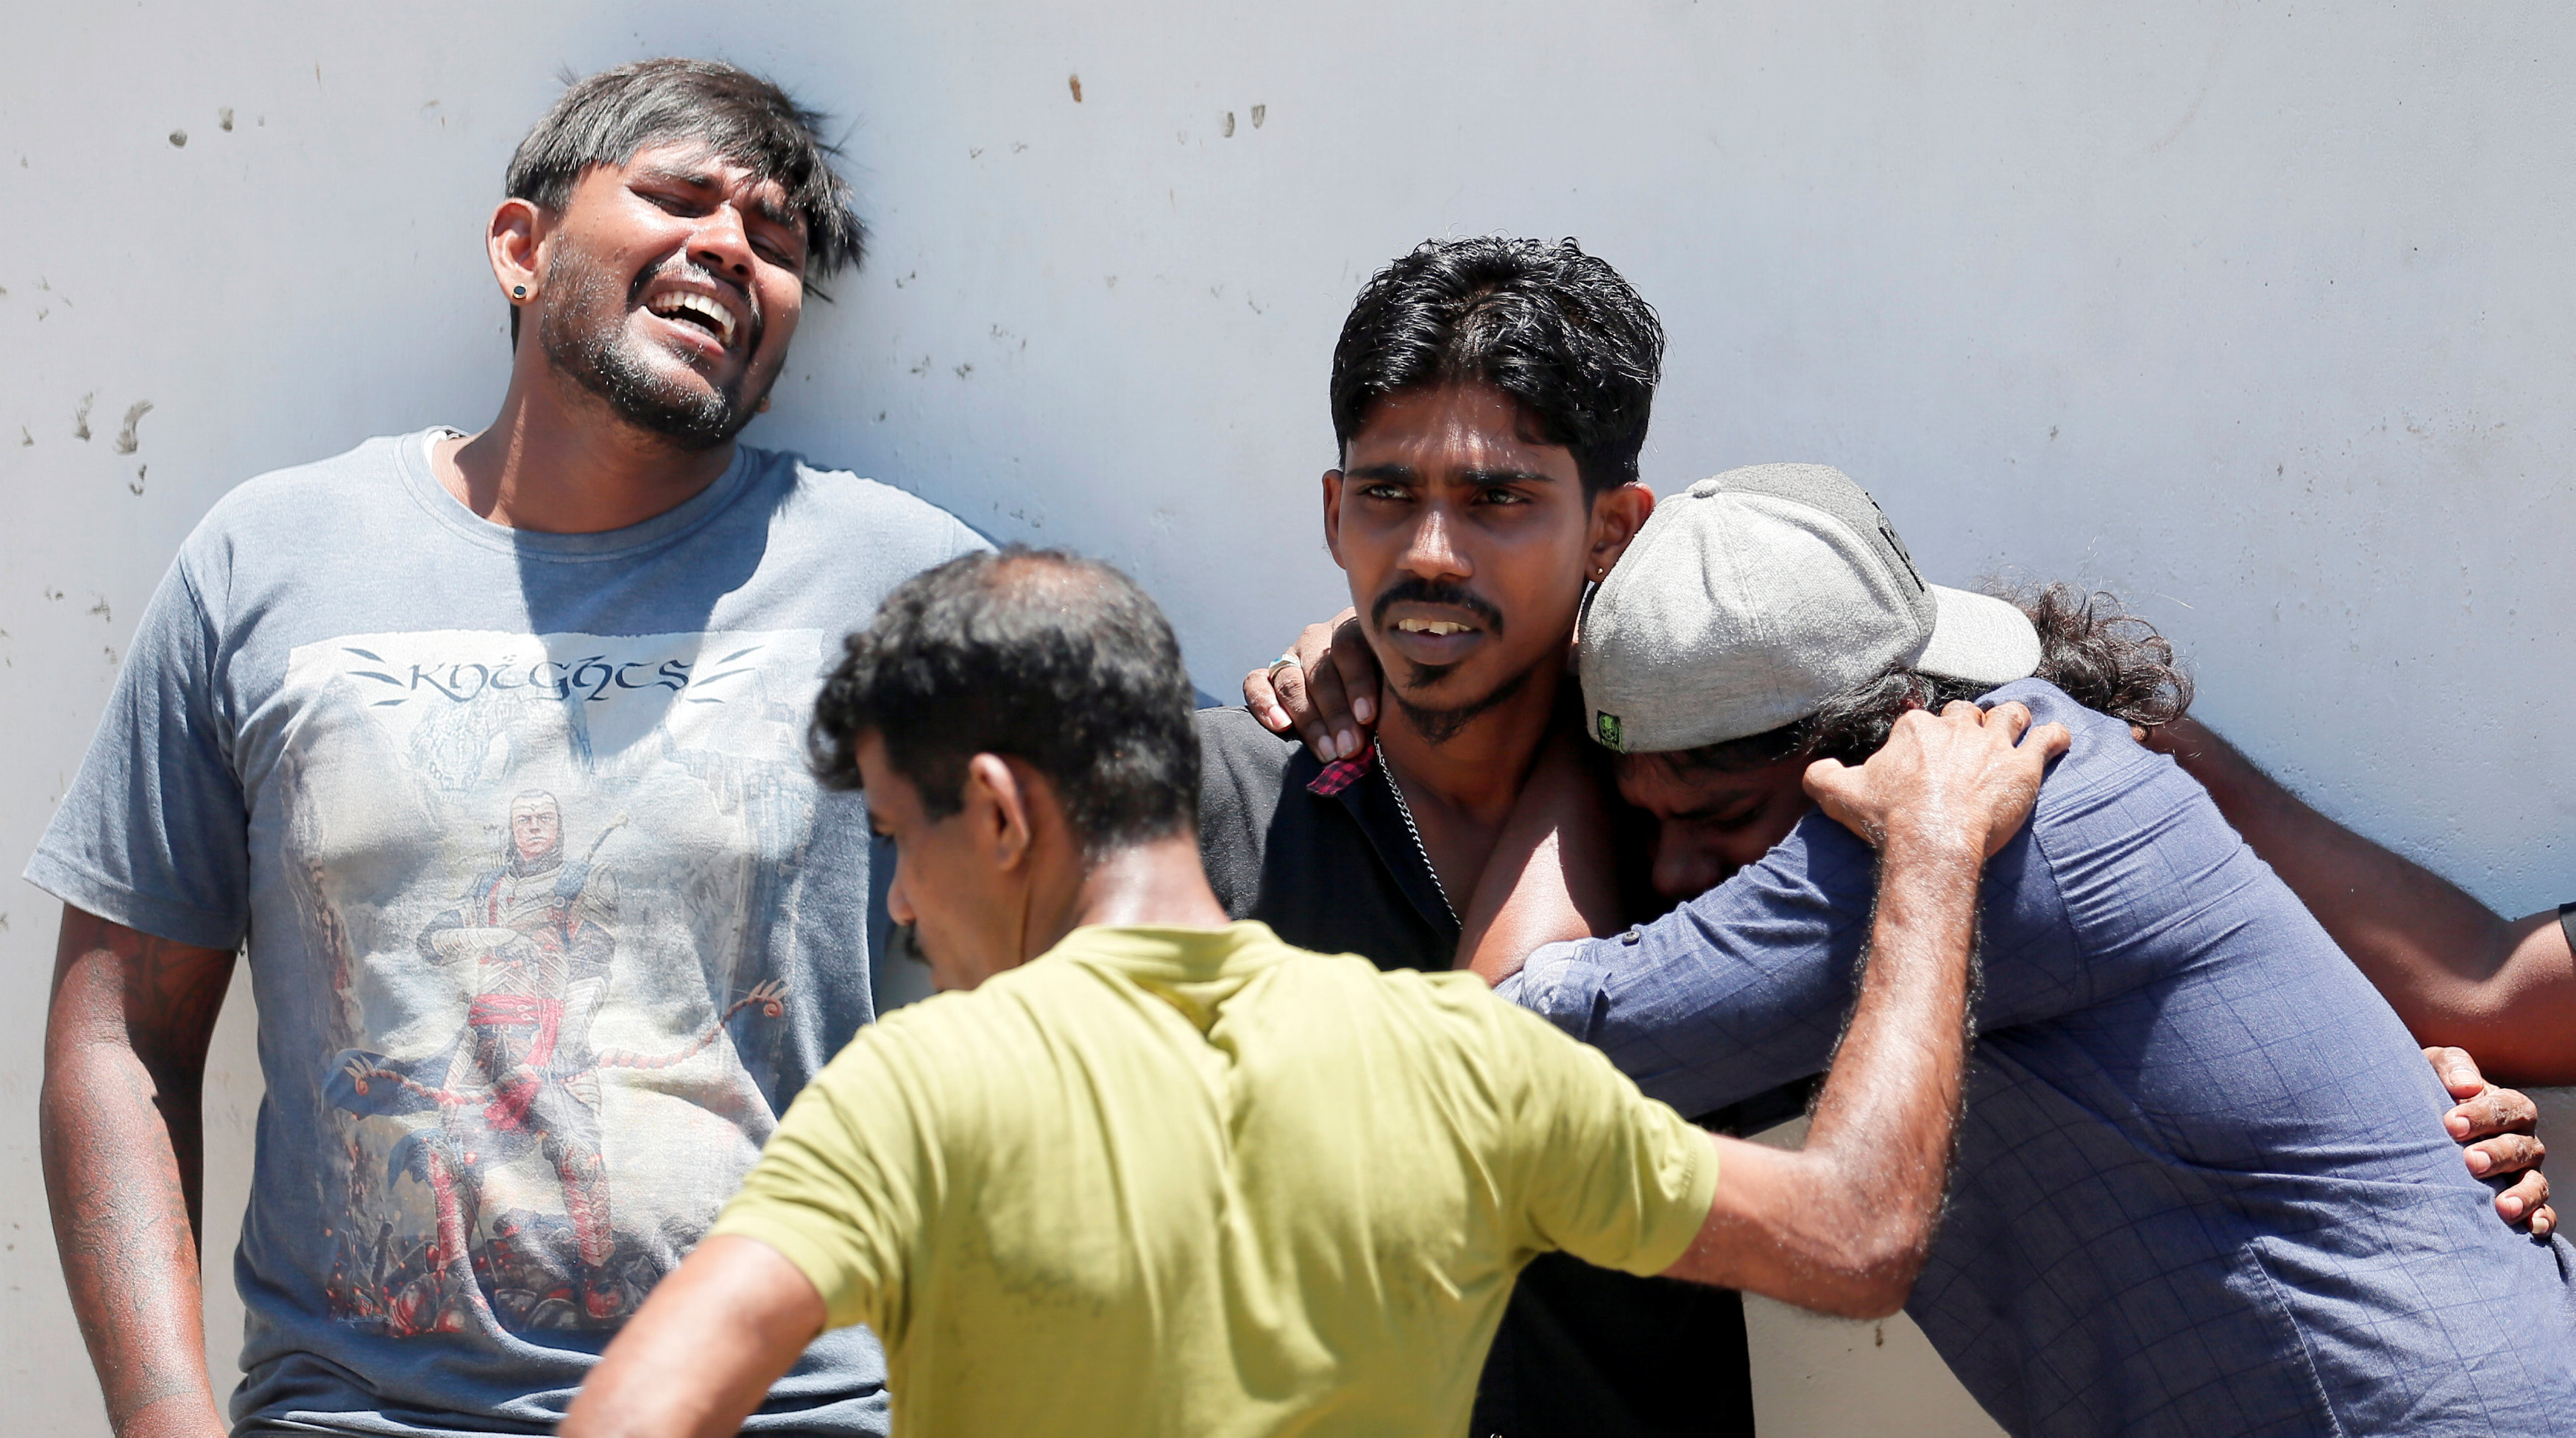 El mundo condena los atentados en Sri Lanka el día de Pascua